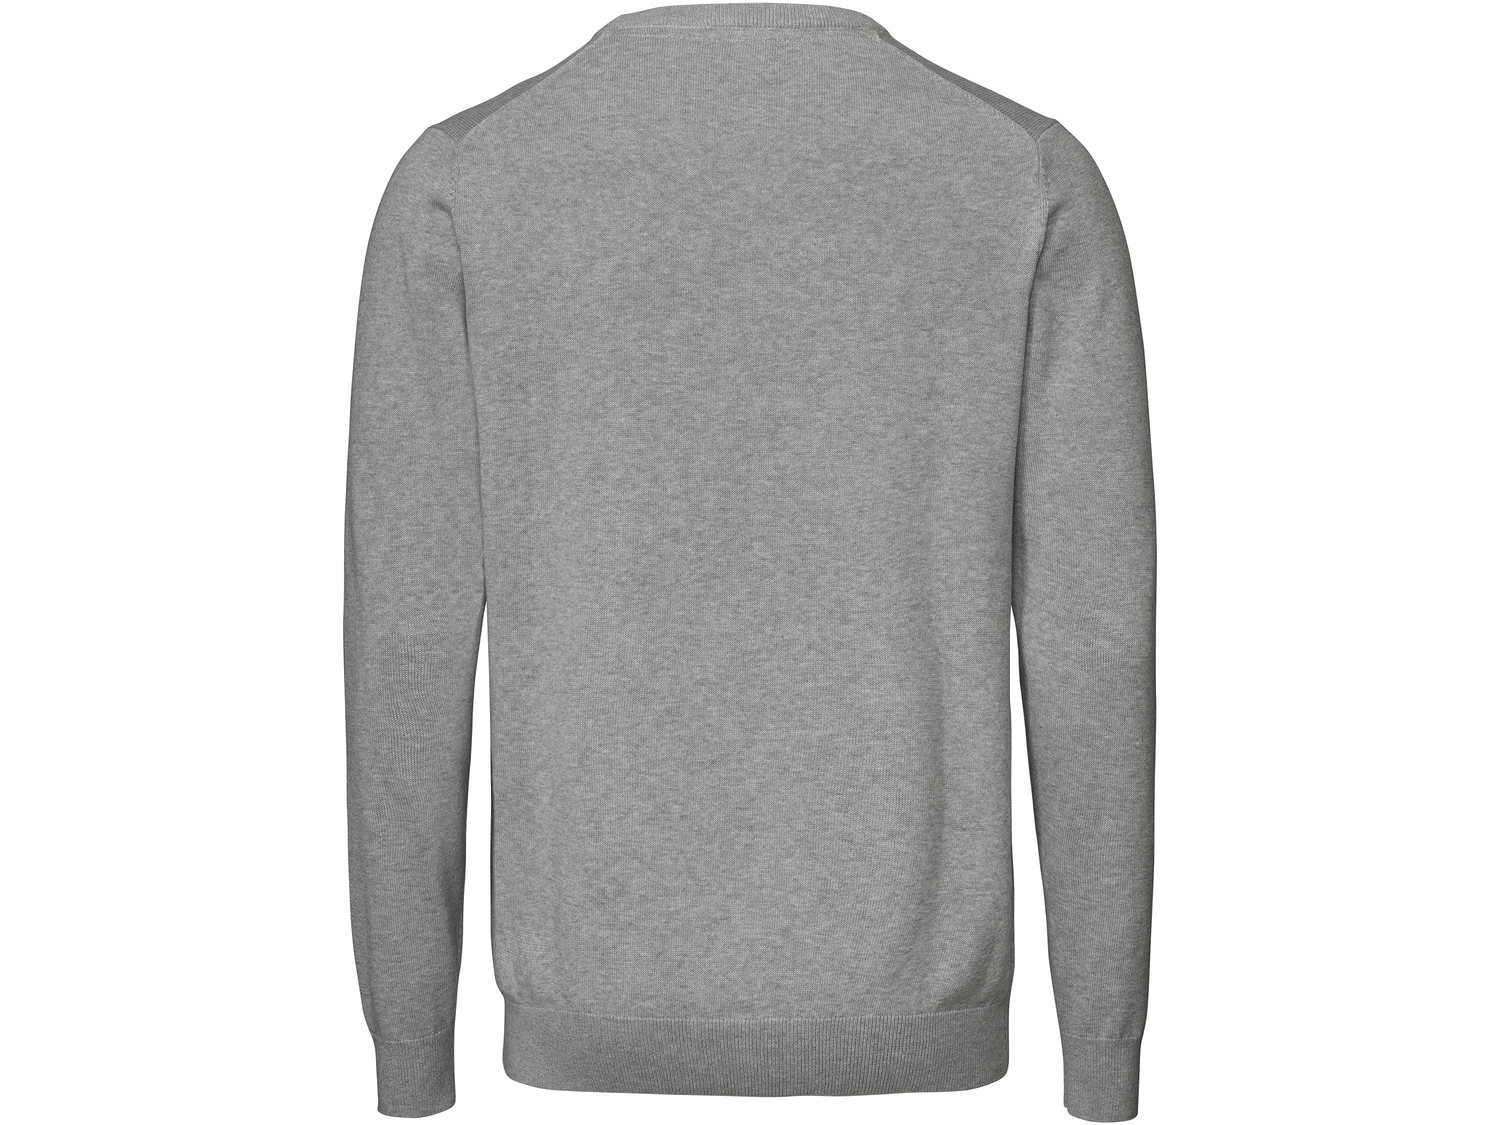 Sweter Livergy, cena 34,99 PLN 
- wysoka zawartość bawełny
- rozmiary: M-XL
- ...